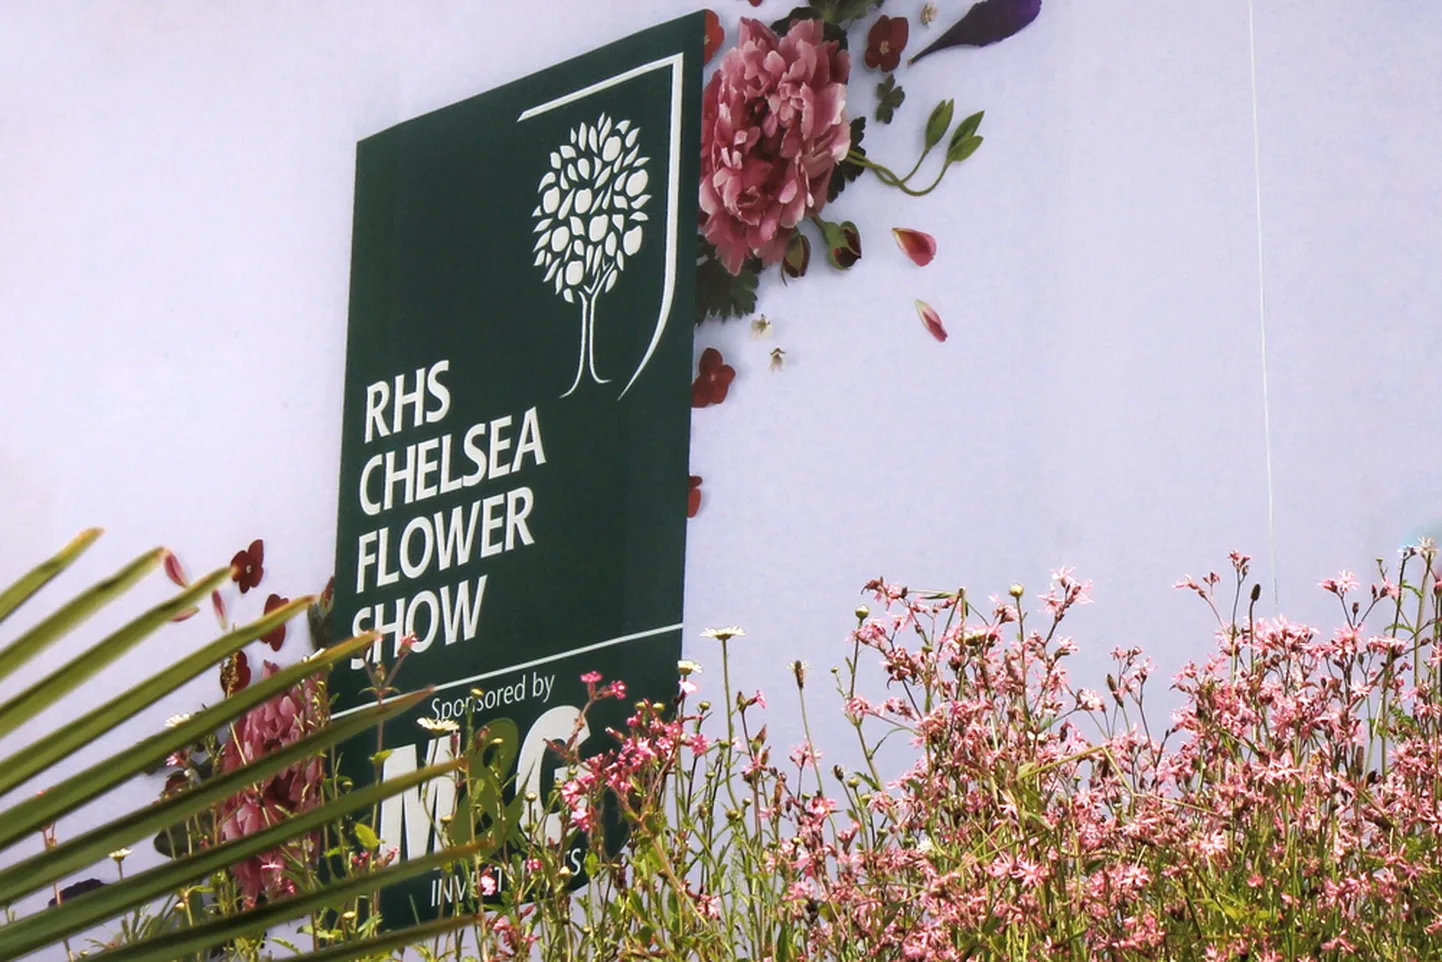 Chelsea Flower Show. Pilt on illustreeriv.